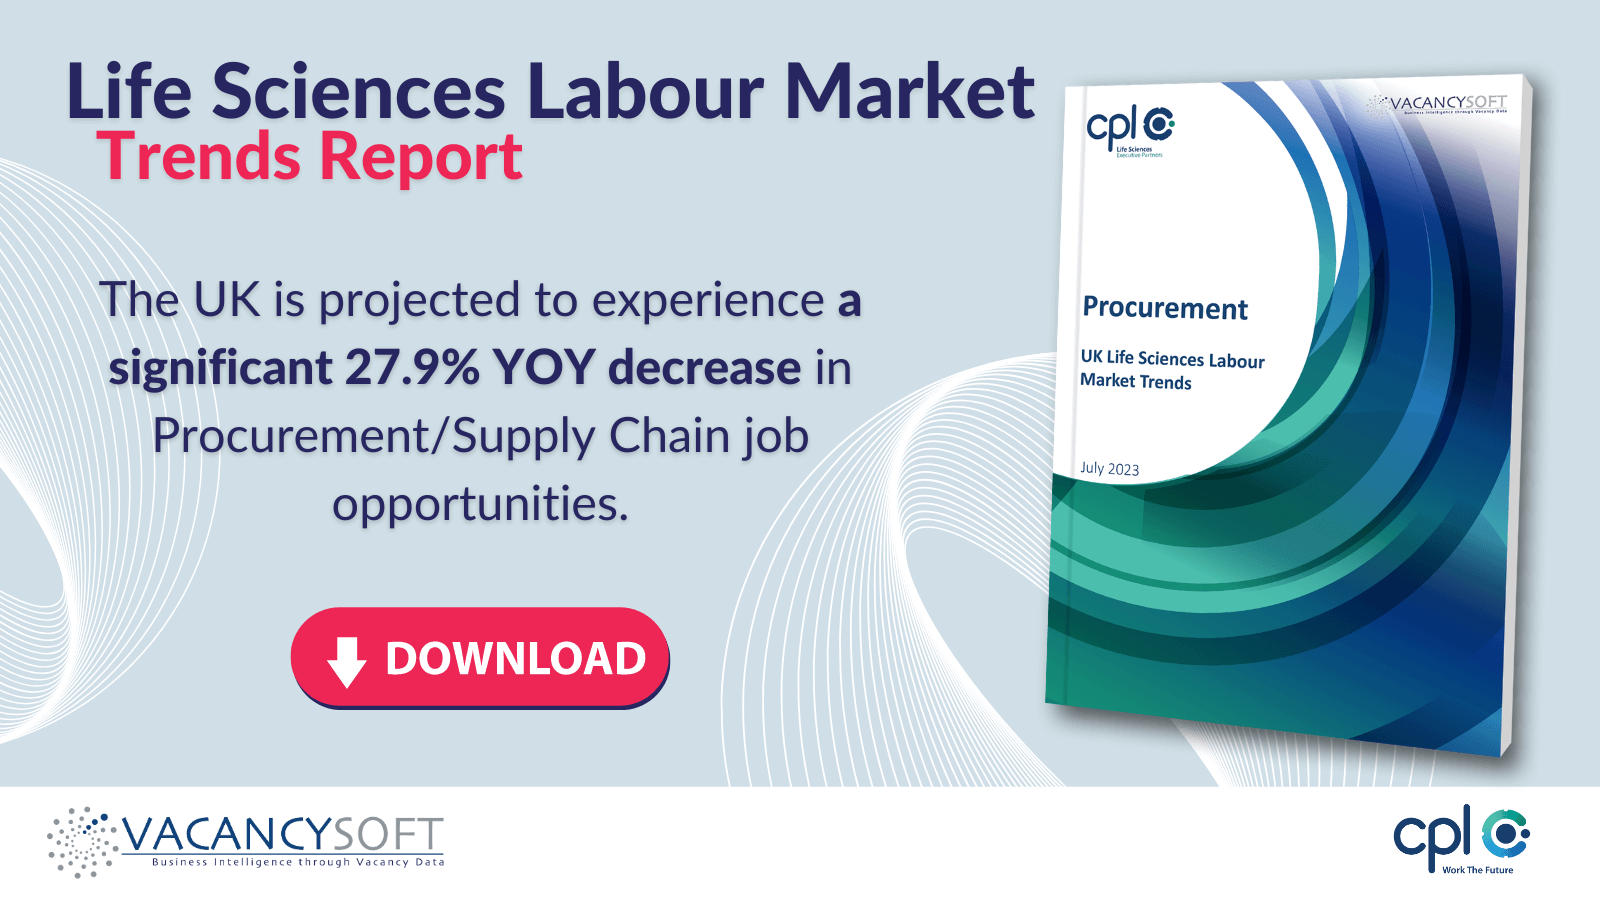 Procurement – EEA/UK Life Sciences Labour Market Trends, July 2023